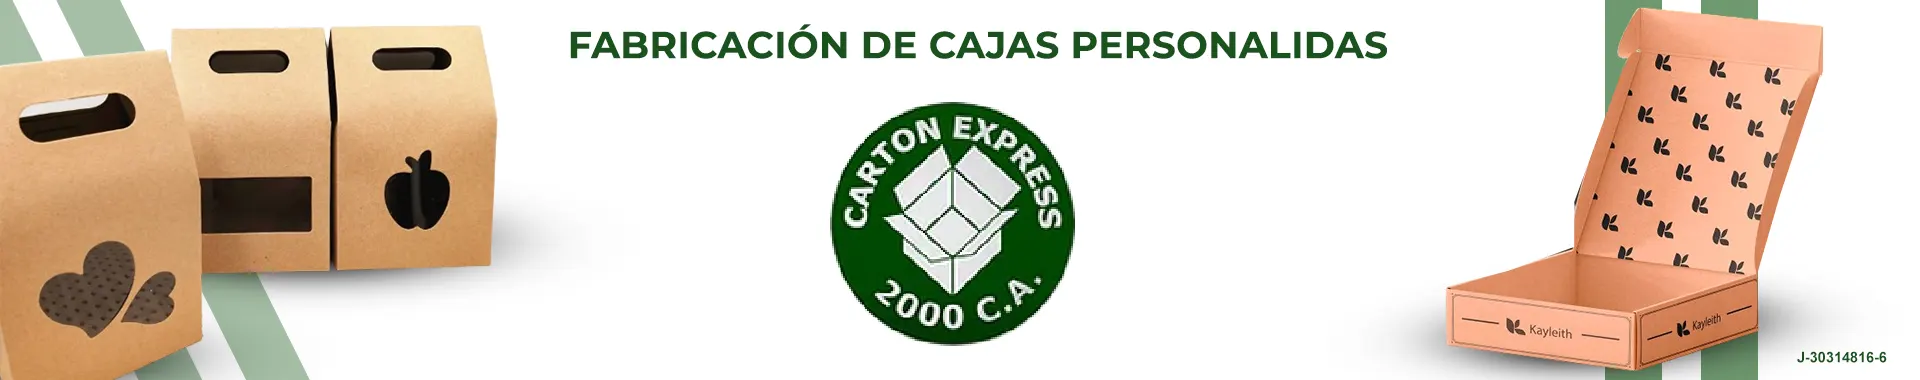 Imagen 2 del perfil de Cartón Express 2000